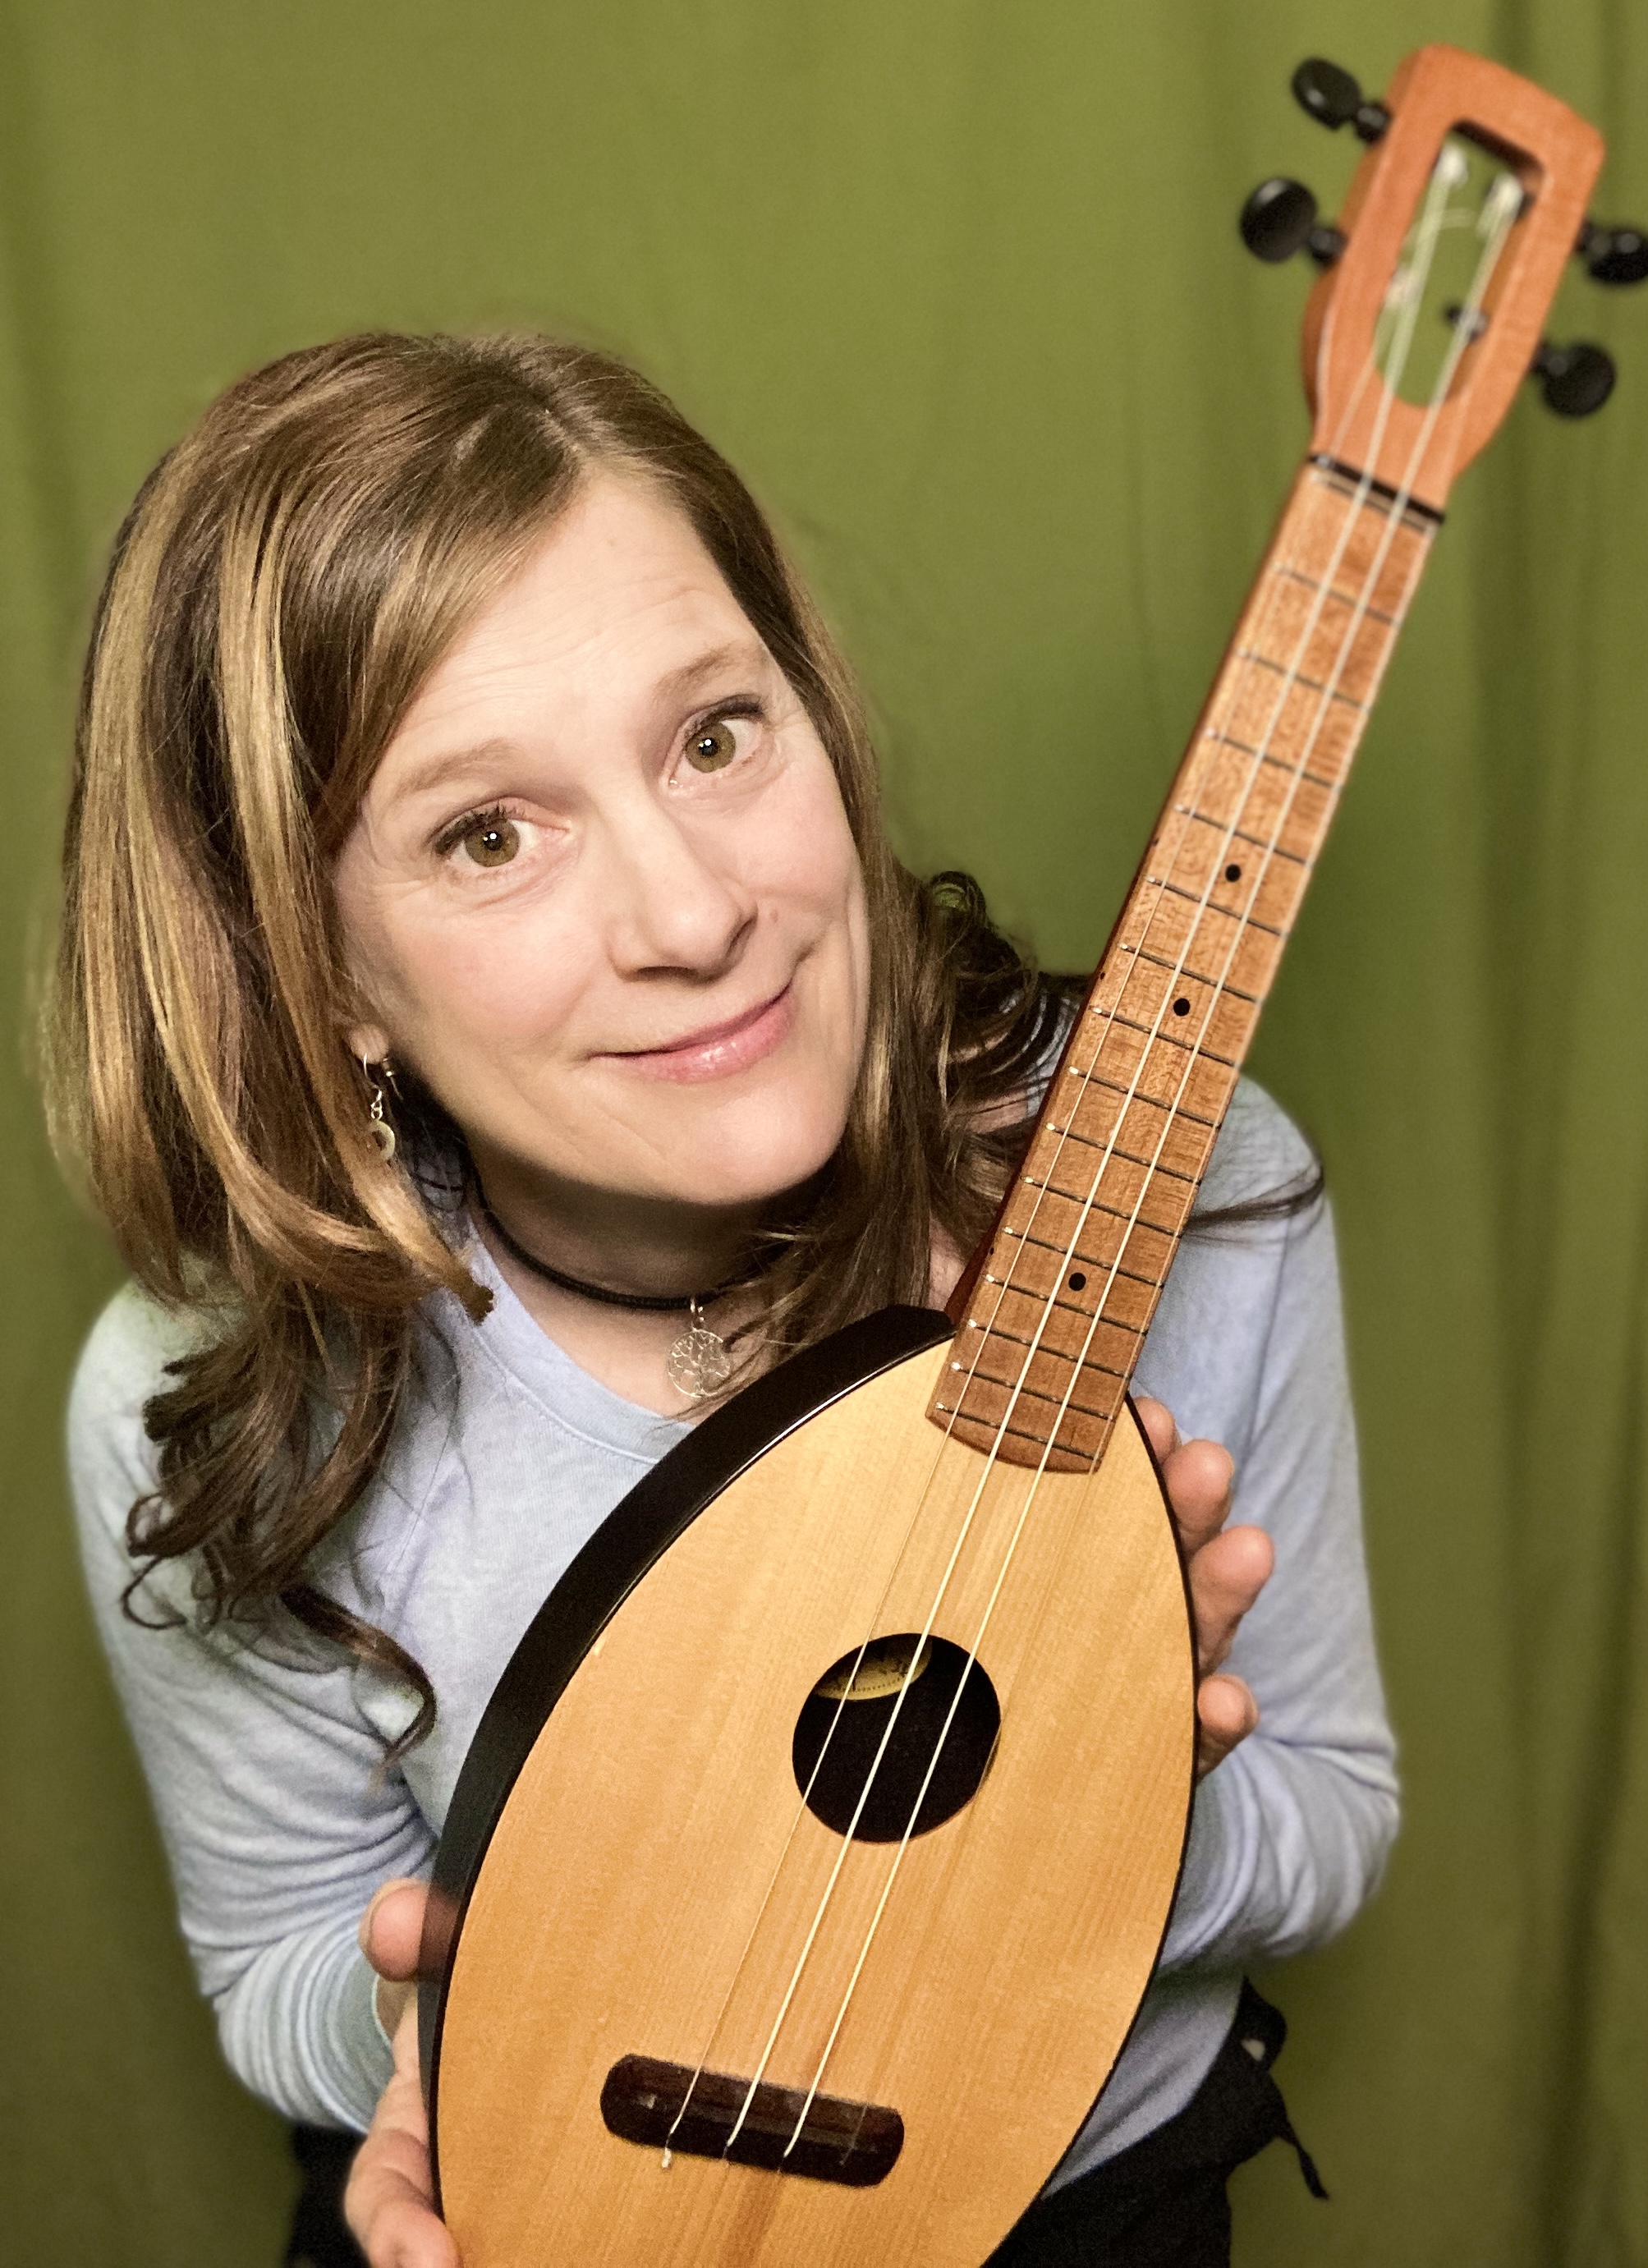 Julie Stepanek posing with a ukulele